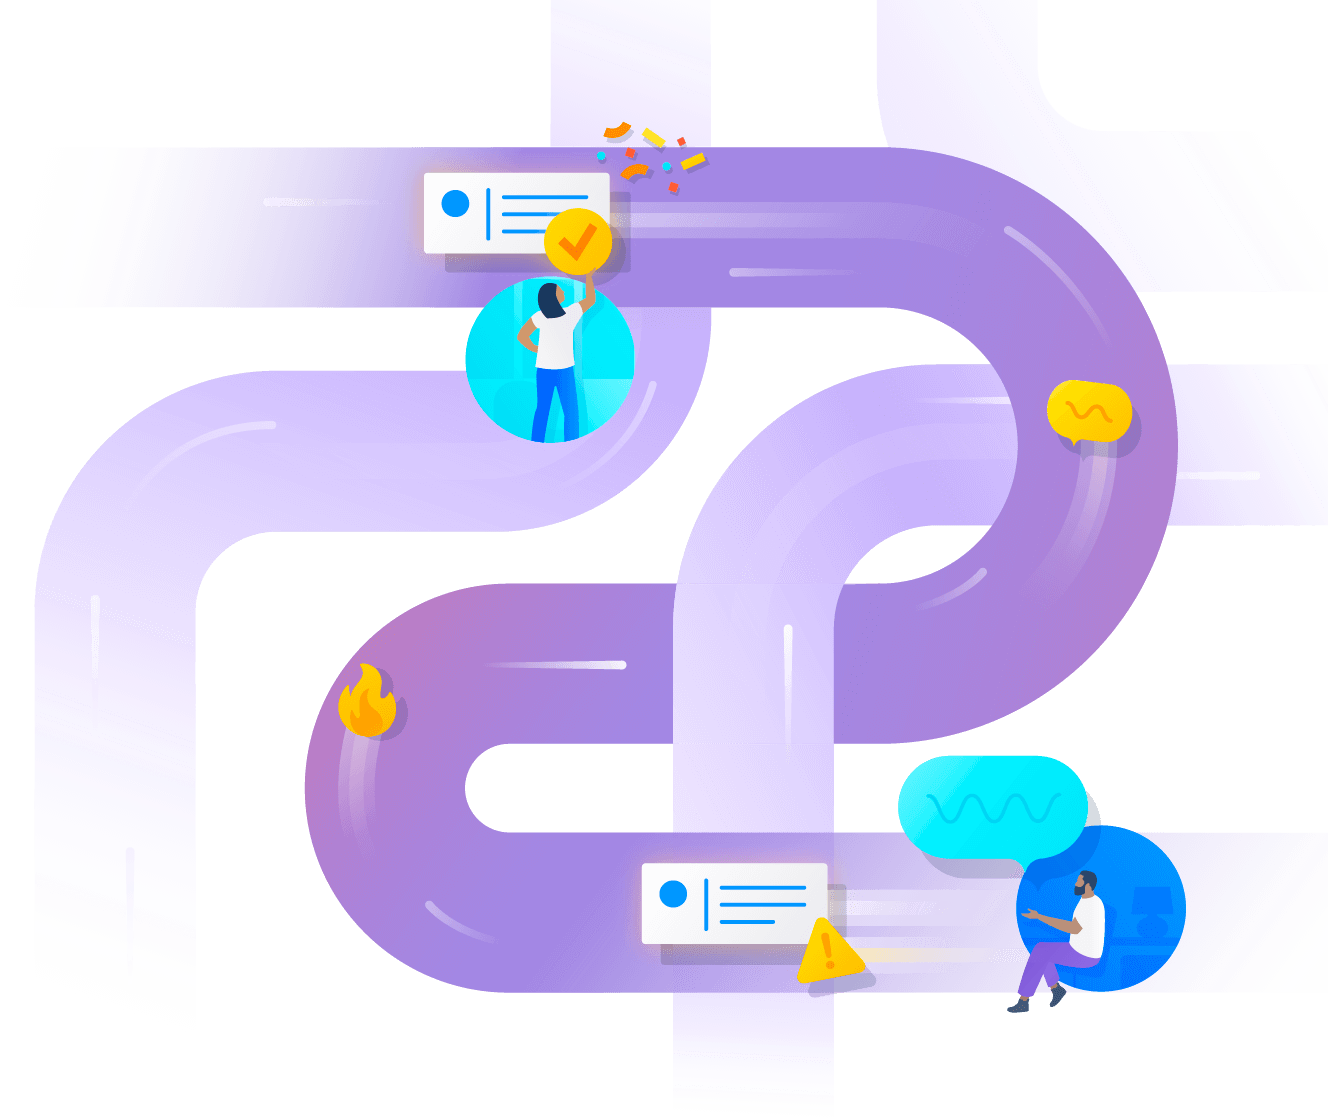 Imagem visual de conexão do Jira Service Management - conexão de vários tubos